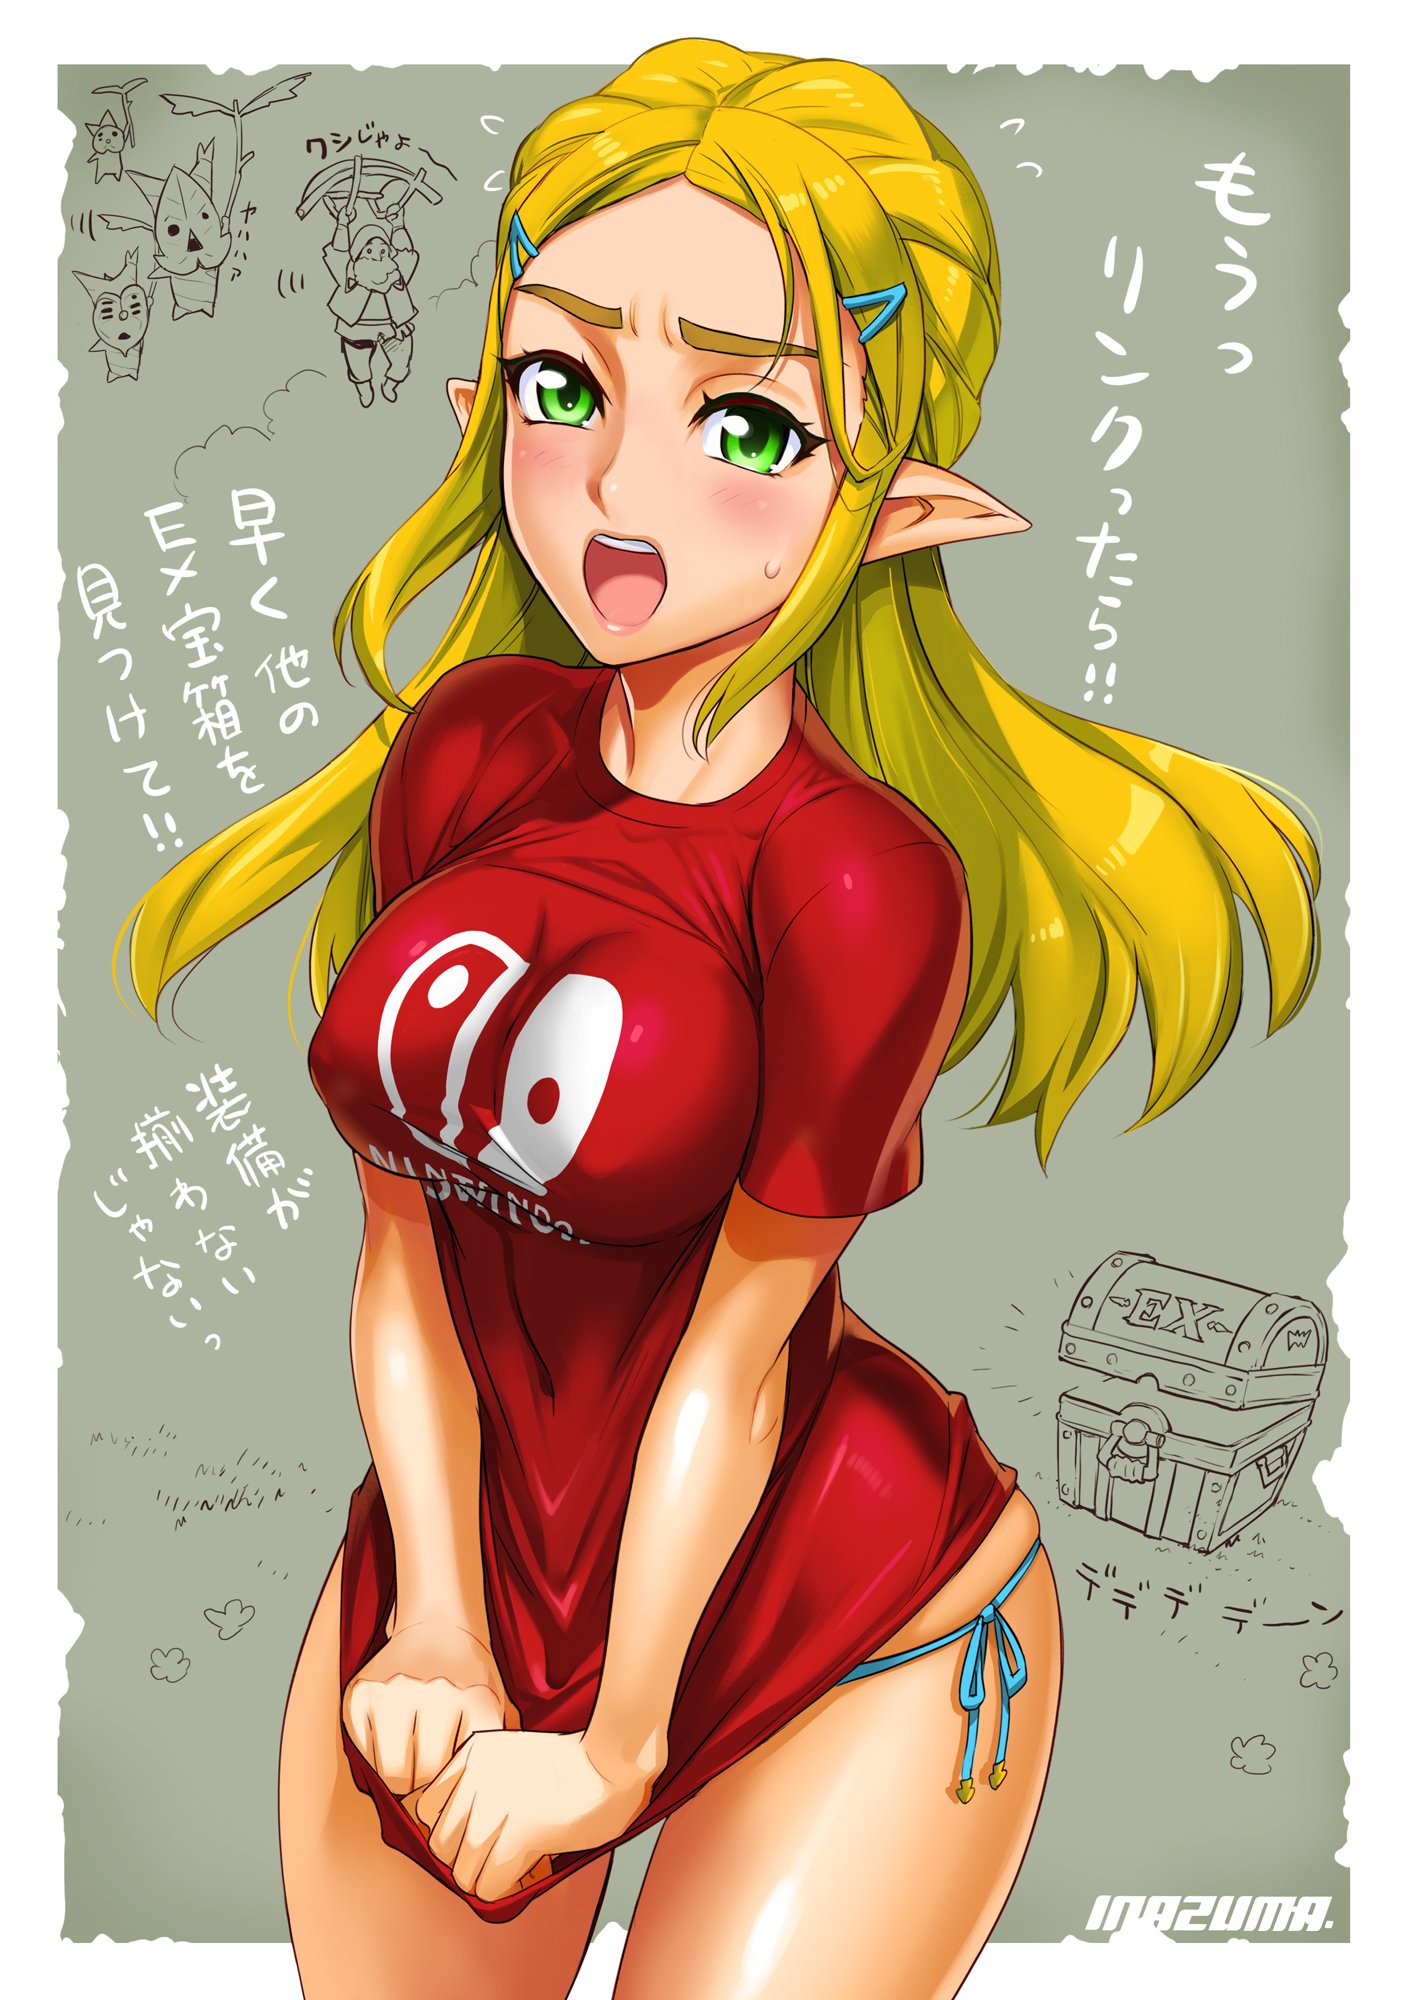 Don't look Link! - Zelda BOTW